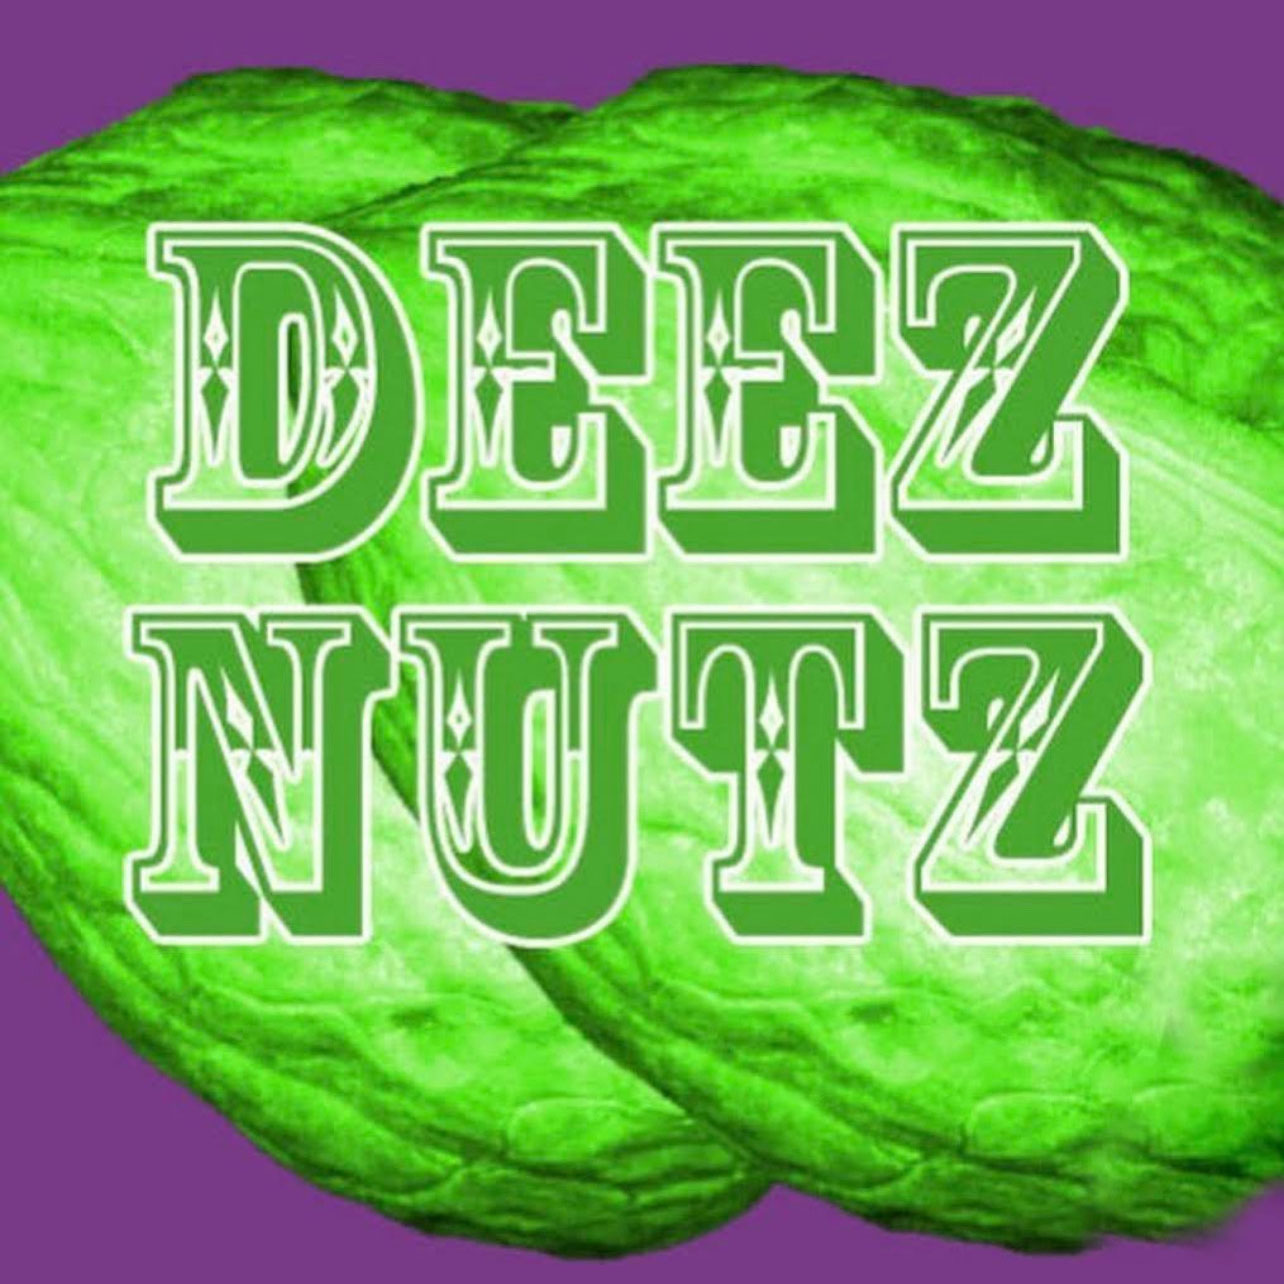 Deez Nutz comedy